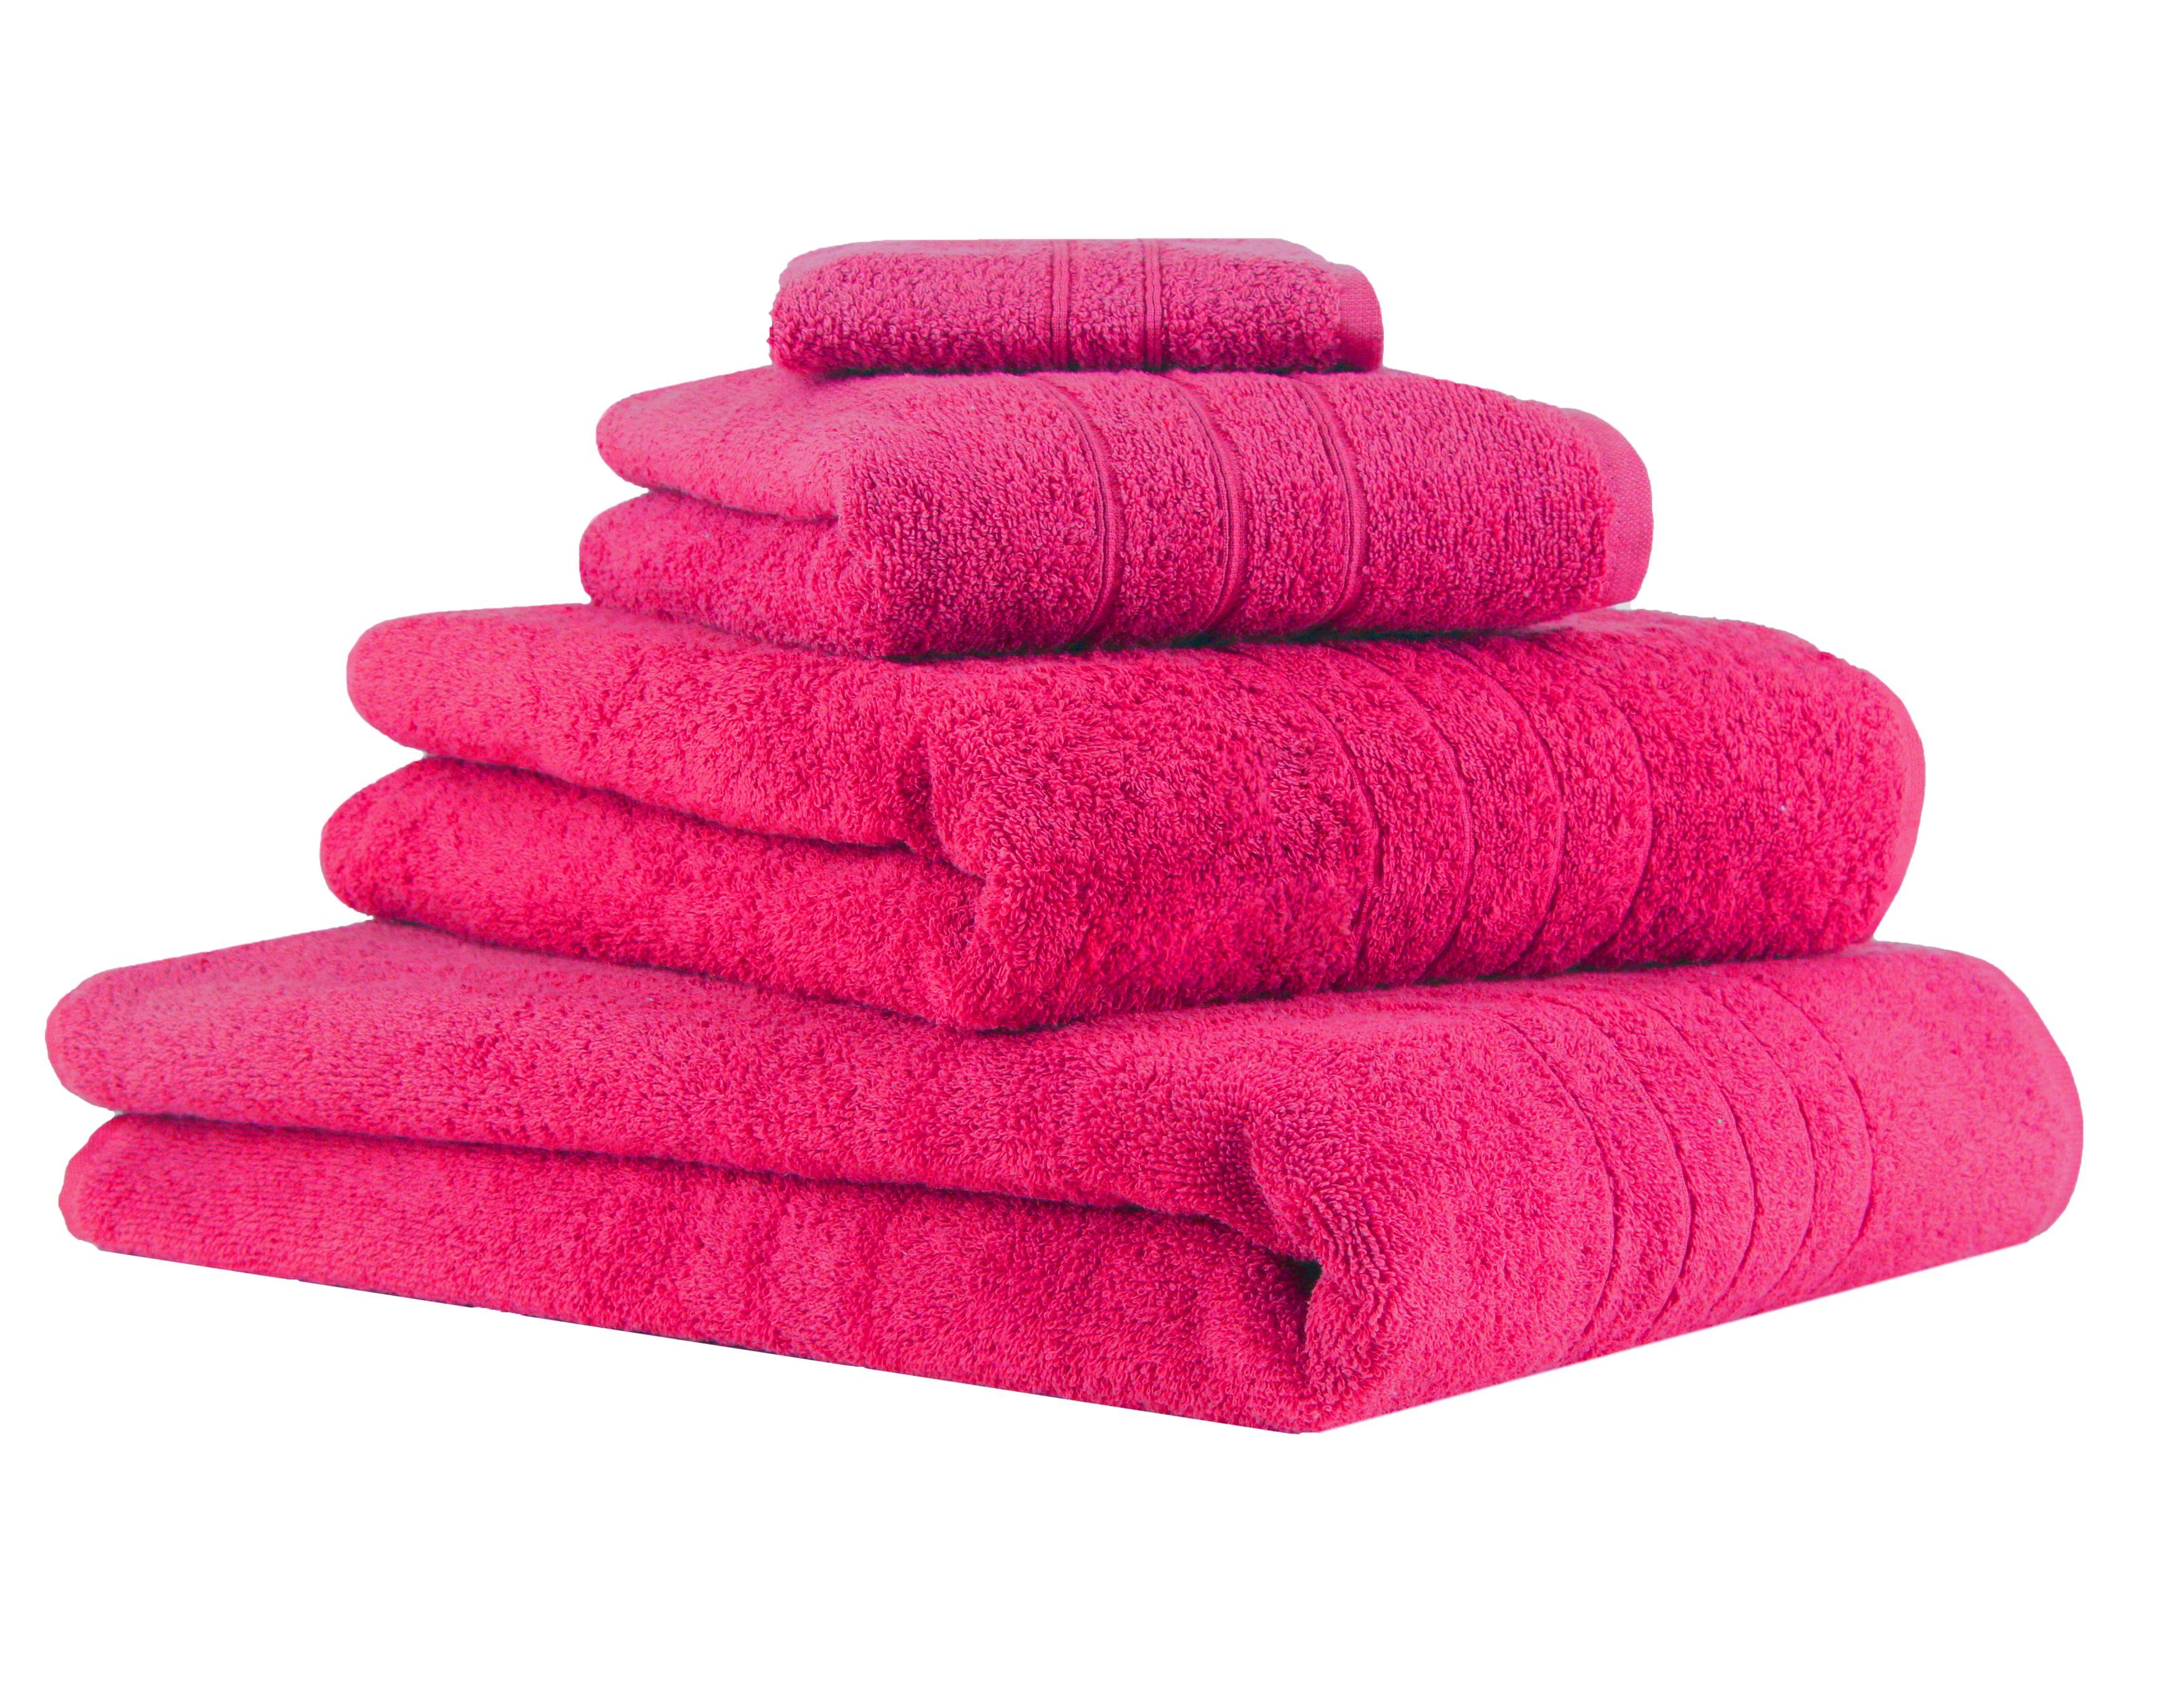 100% Handtuch 100% Fuchsia, 1 Badetuch Seiftuch Handtuch Farbe 1 Set Baumwolle, Handtuch-Set Betz Duschtuch 1 Deluxe 4-TLG. Baumwolle (4-tlg) 1